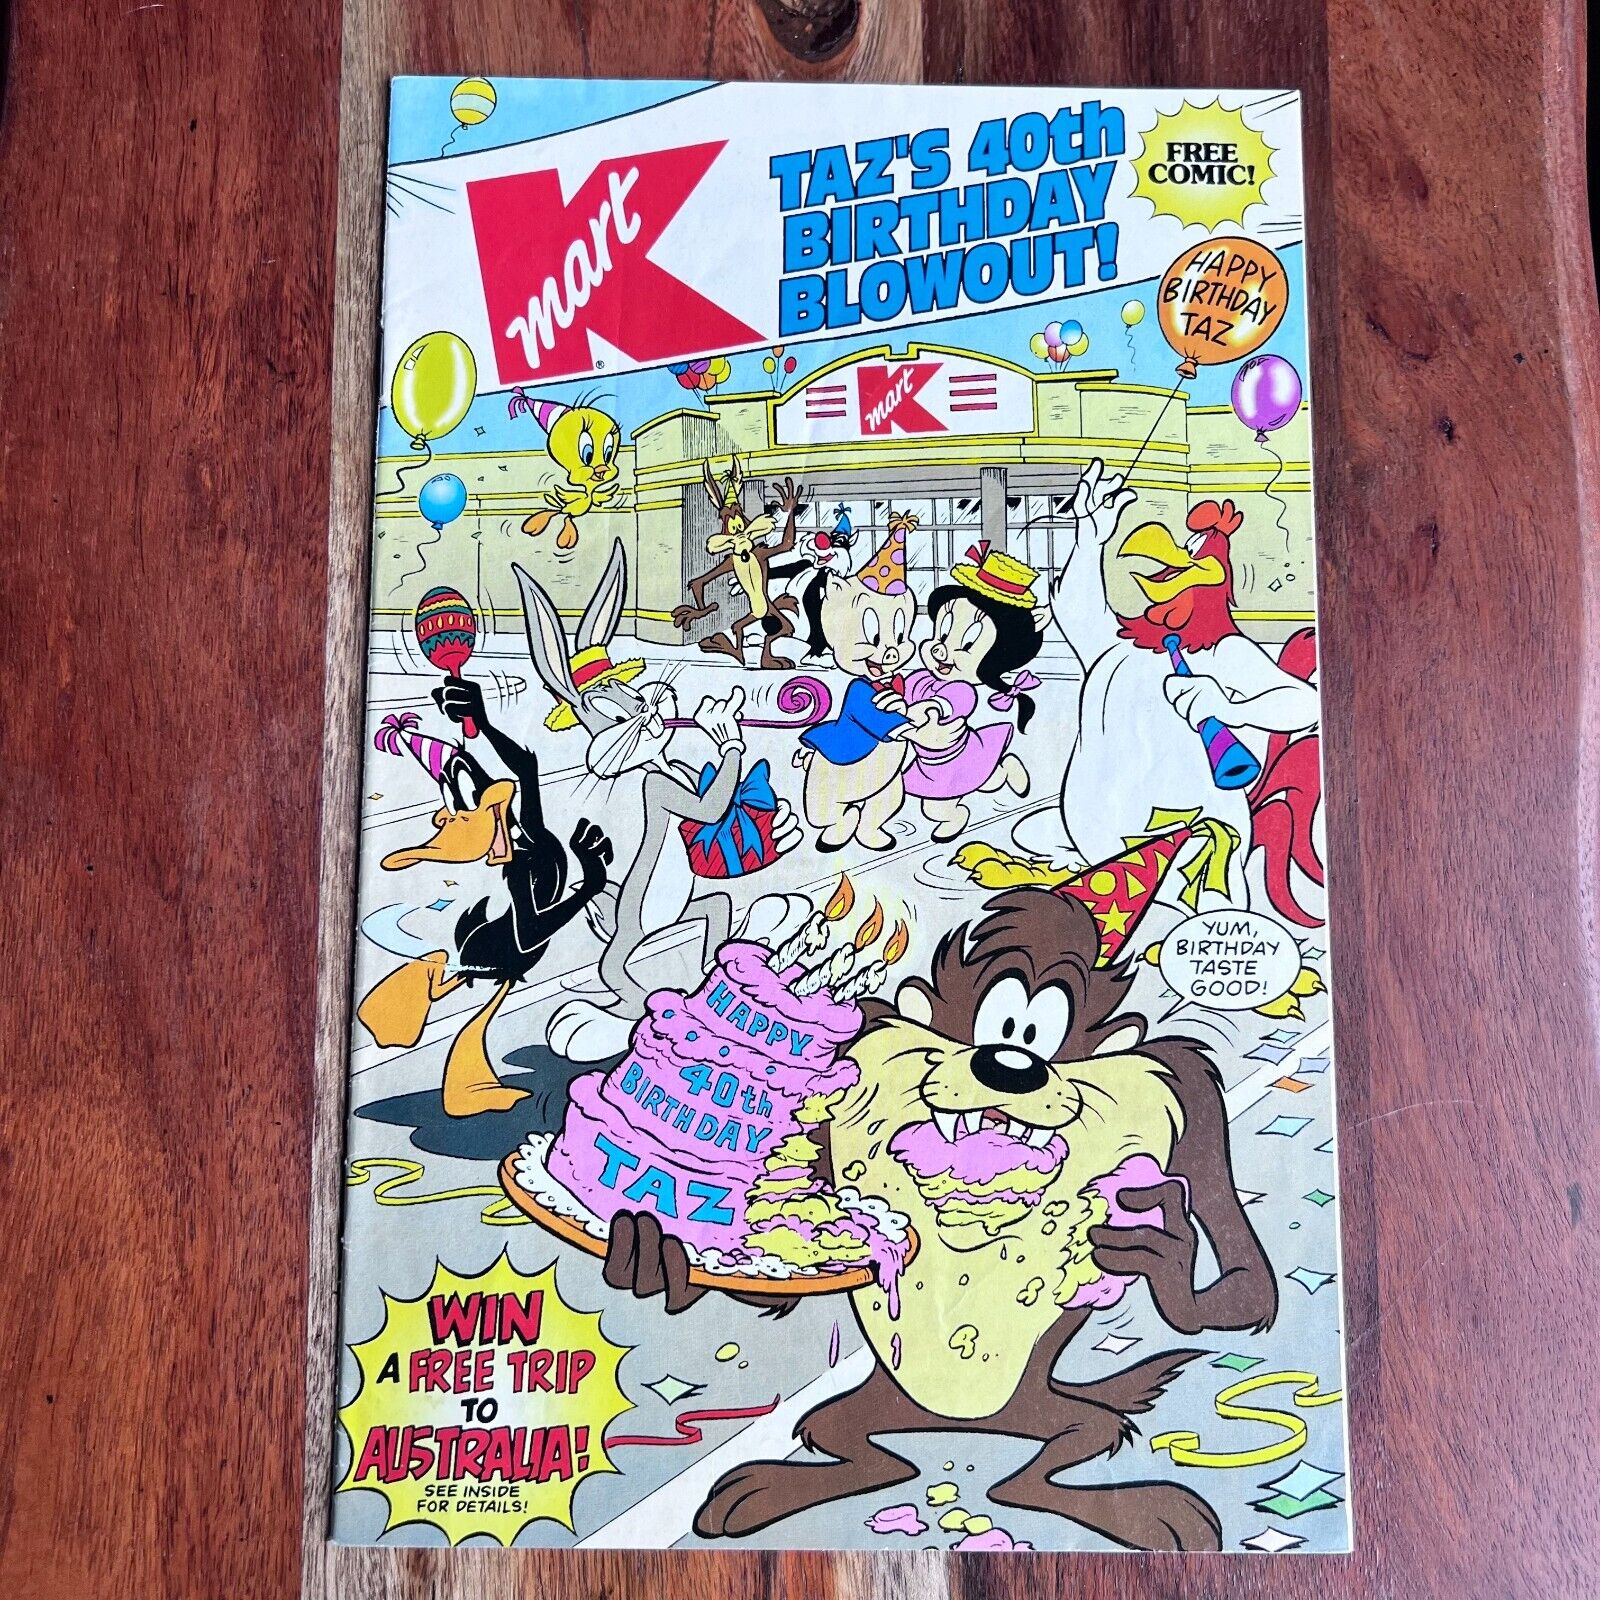 Taz's 40th Birthday Blowout (1994, Kmart & DC Comics)